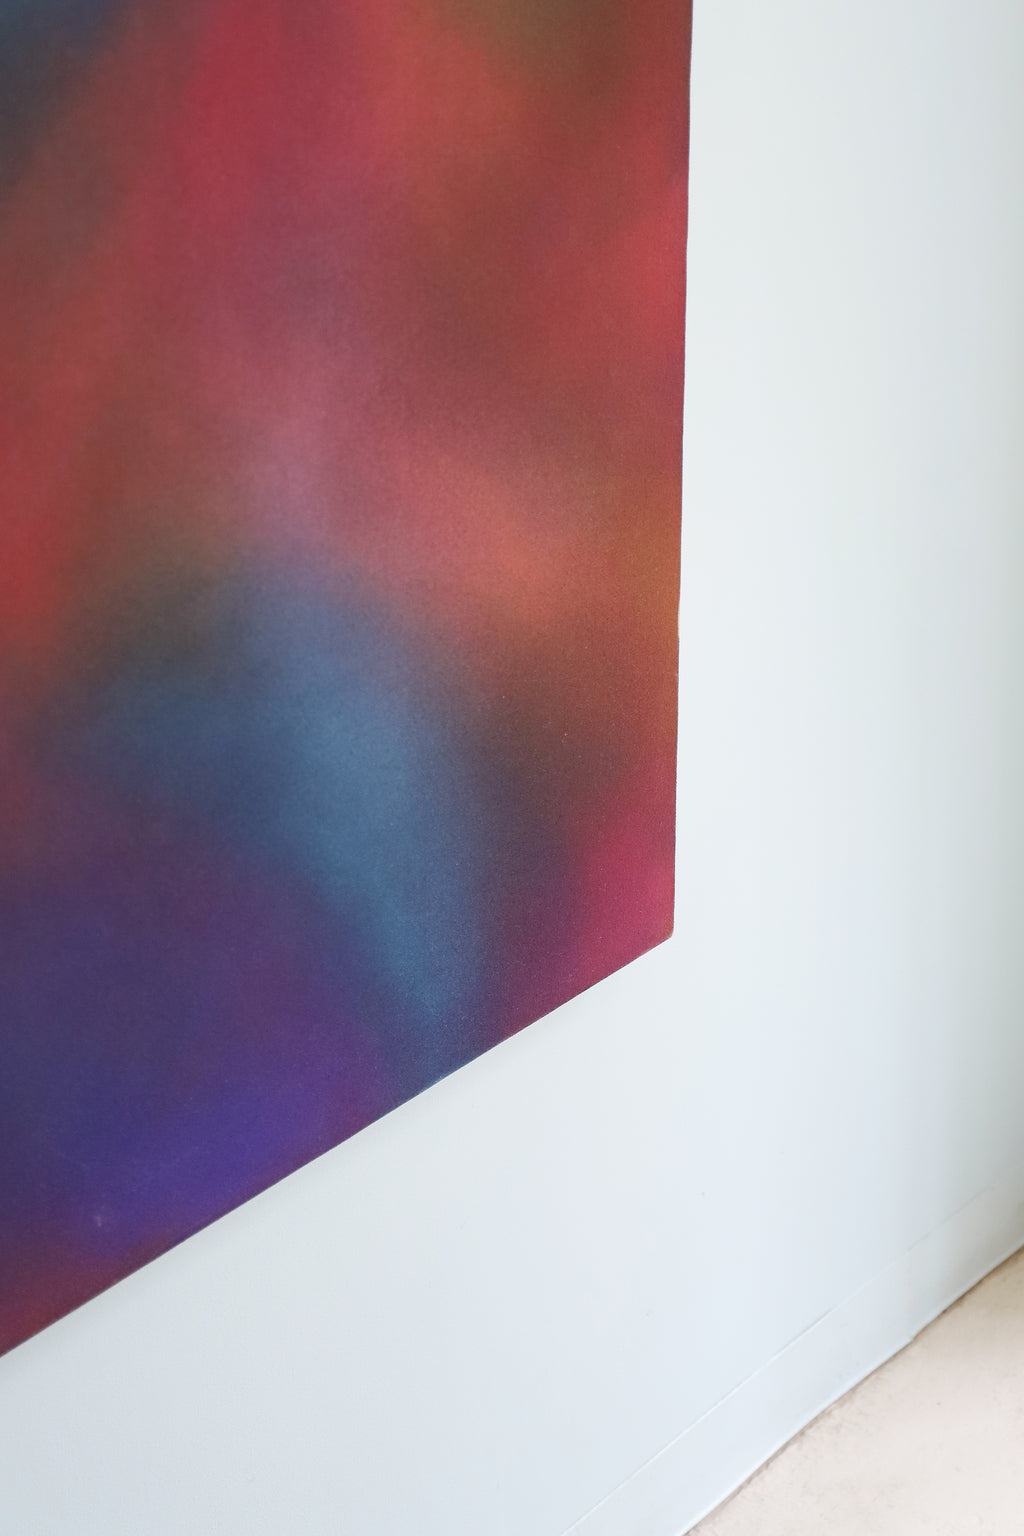 得価送料無料『 根岸芳郎 (ねぎしよしろう) アクリル絵具 キャンバス 作品 径150×130cm S1072 』 カラーフィールドペインティング 現代アート アクリル、ガッシュ